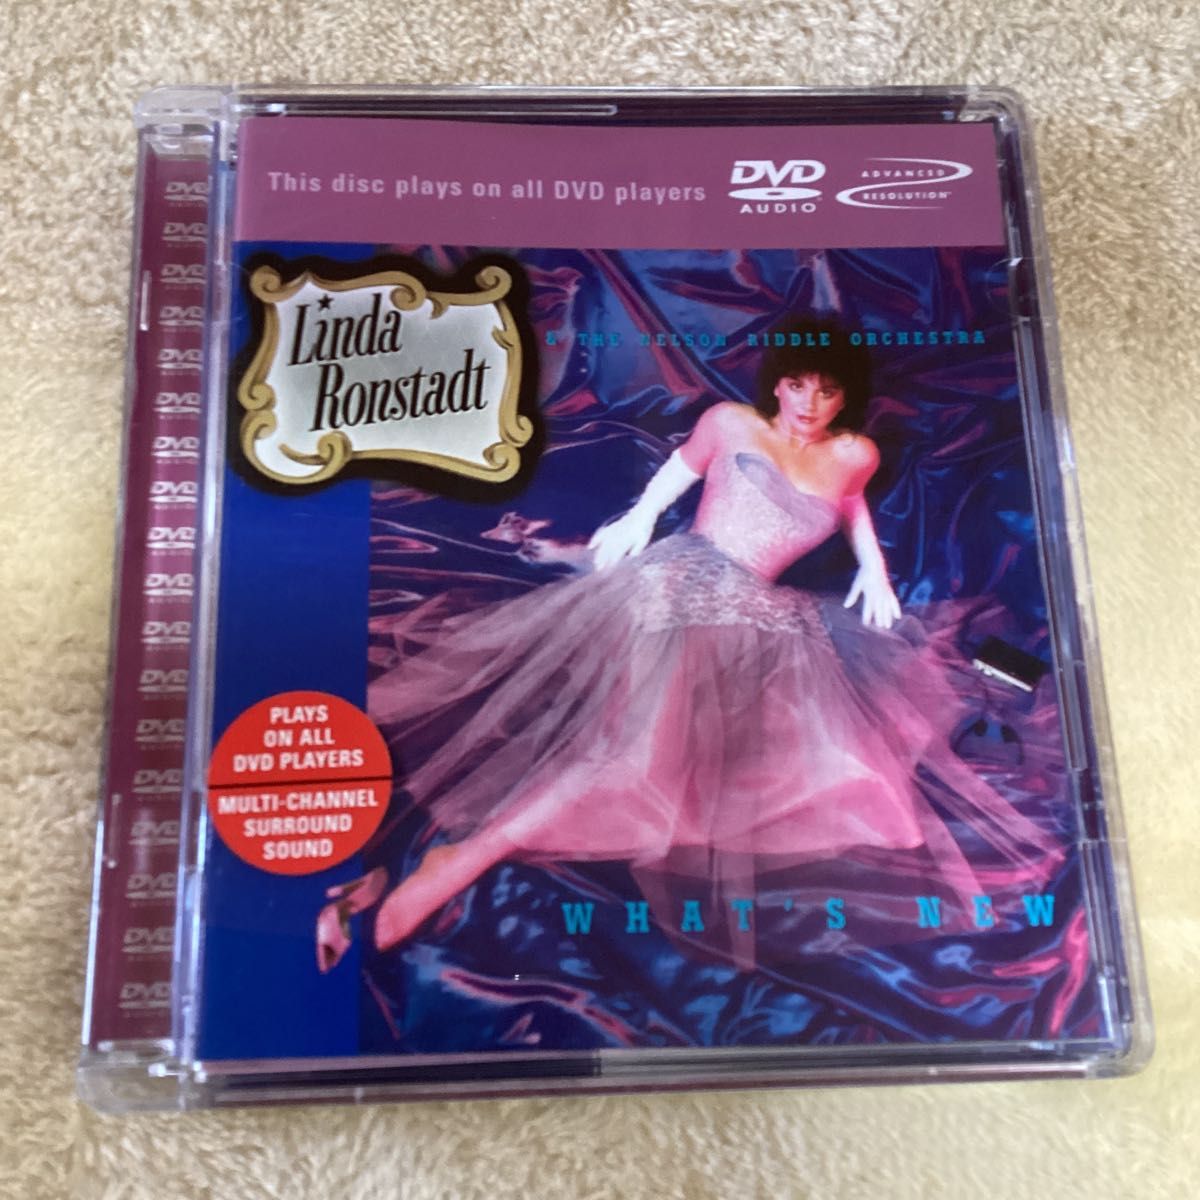 輸入盤 DVD AUDIO リンダ・ロンシュタット LINDA RONSTADT WHATS NEW